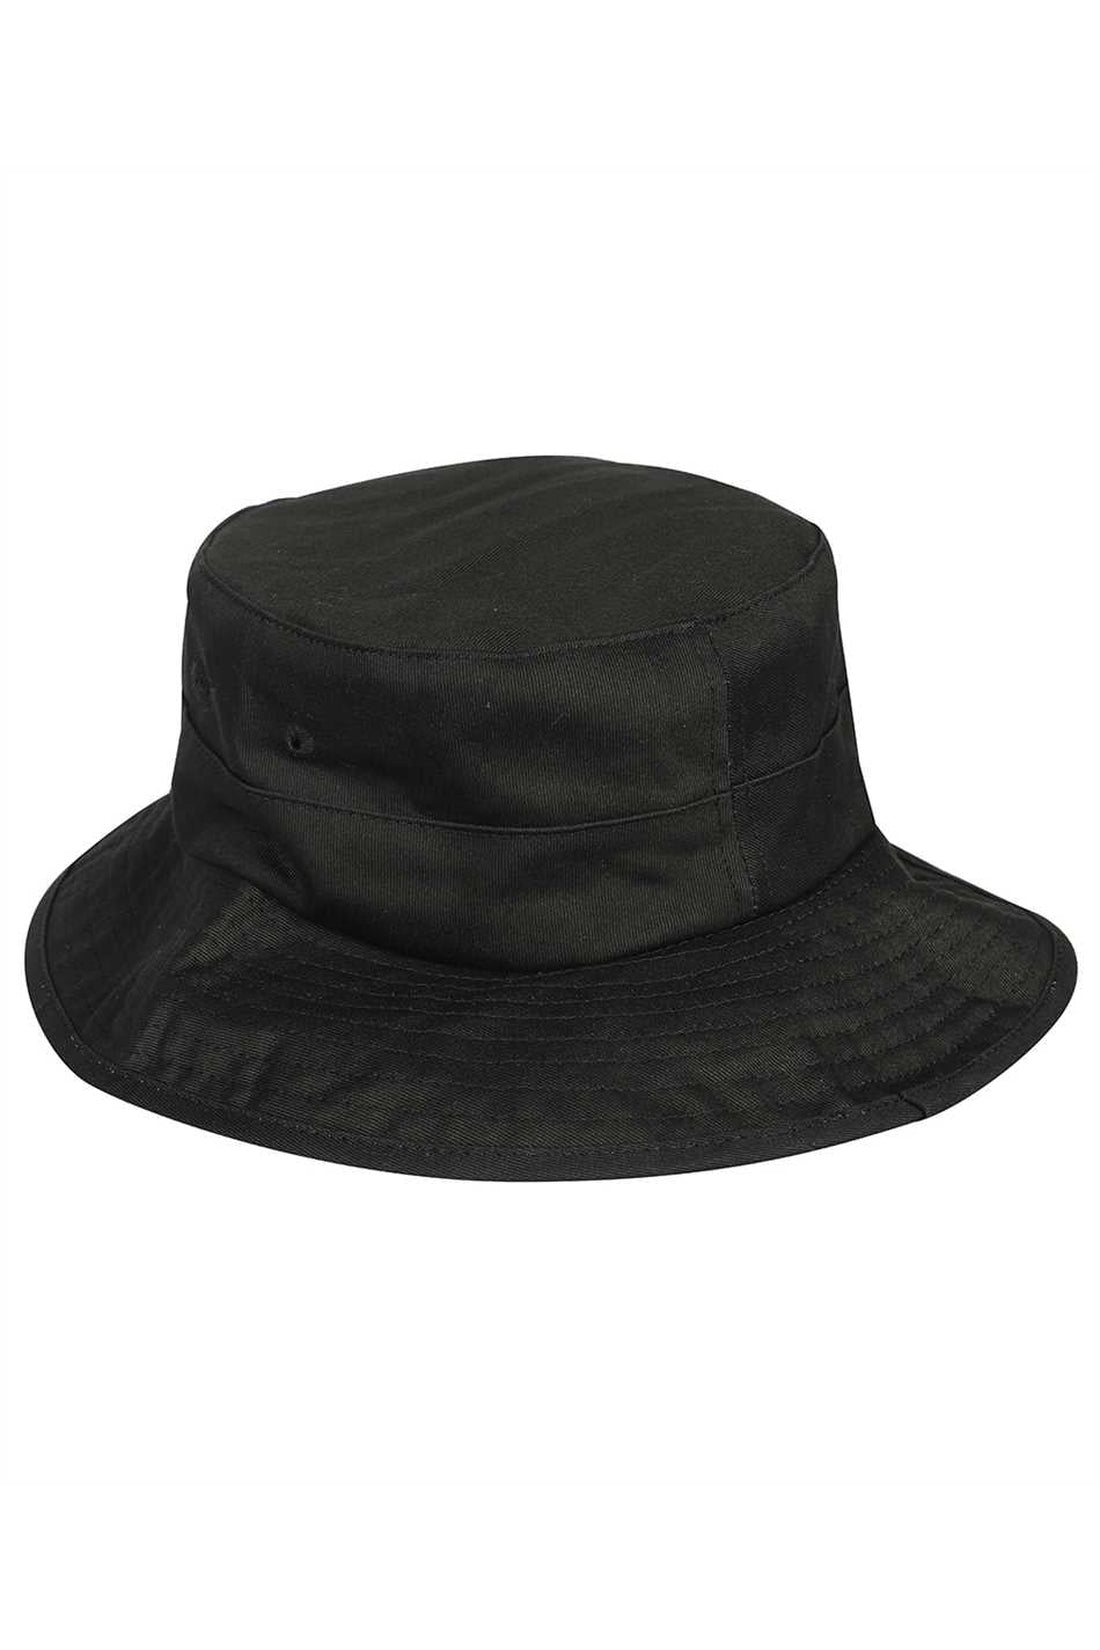 Les Deux-OUTLET-SALE-Bucket hat-ARCHIVIST